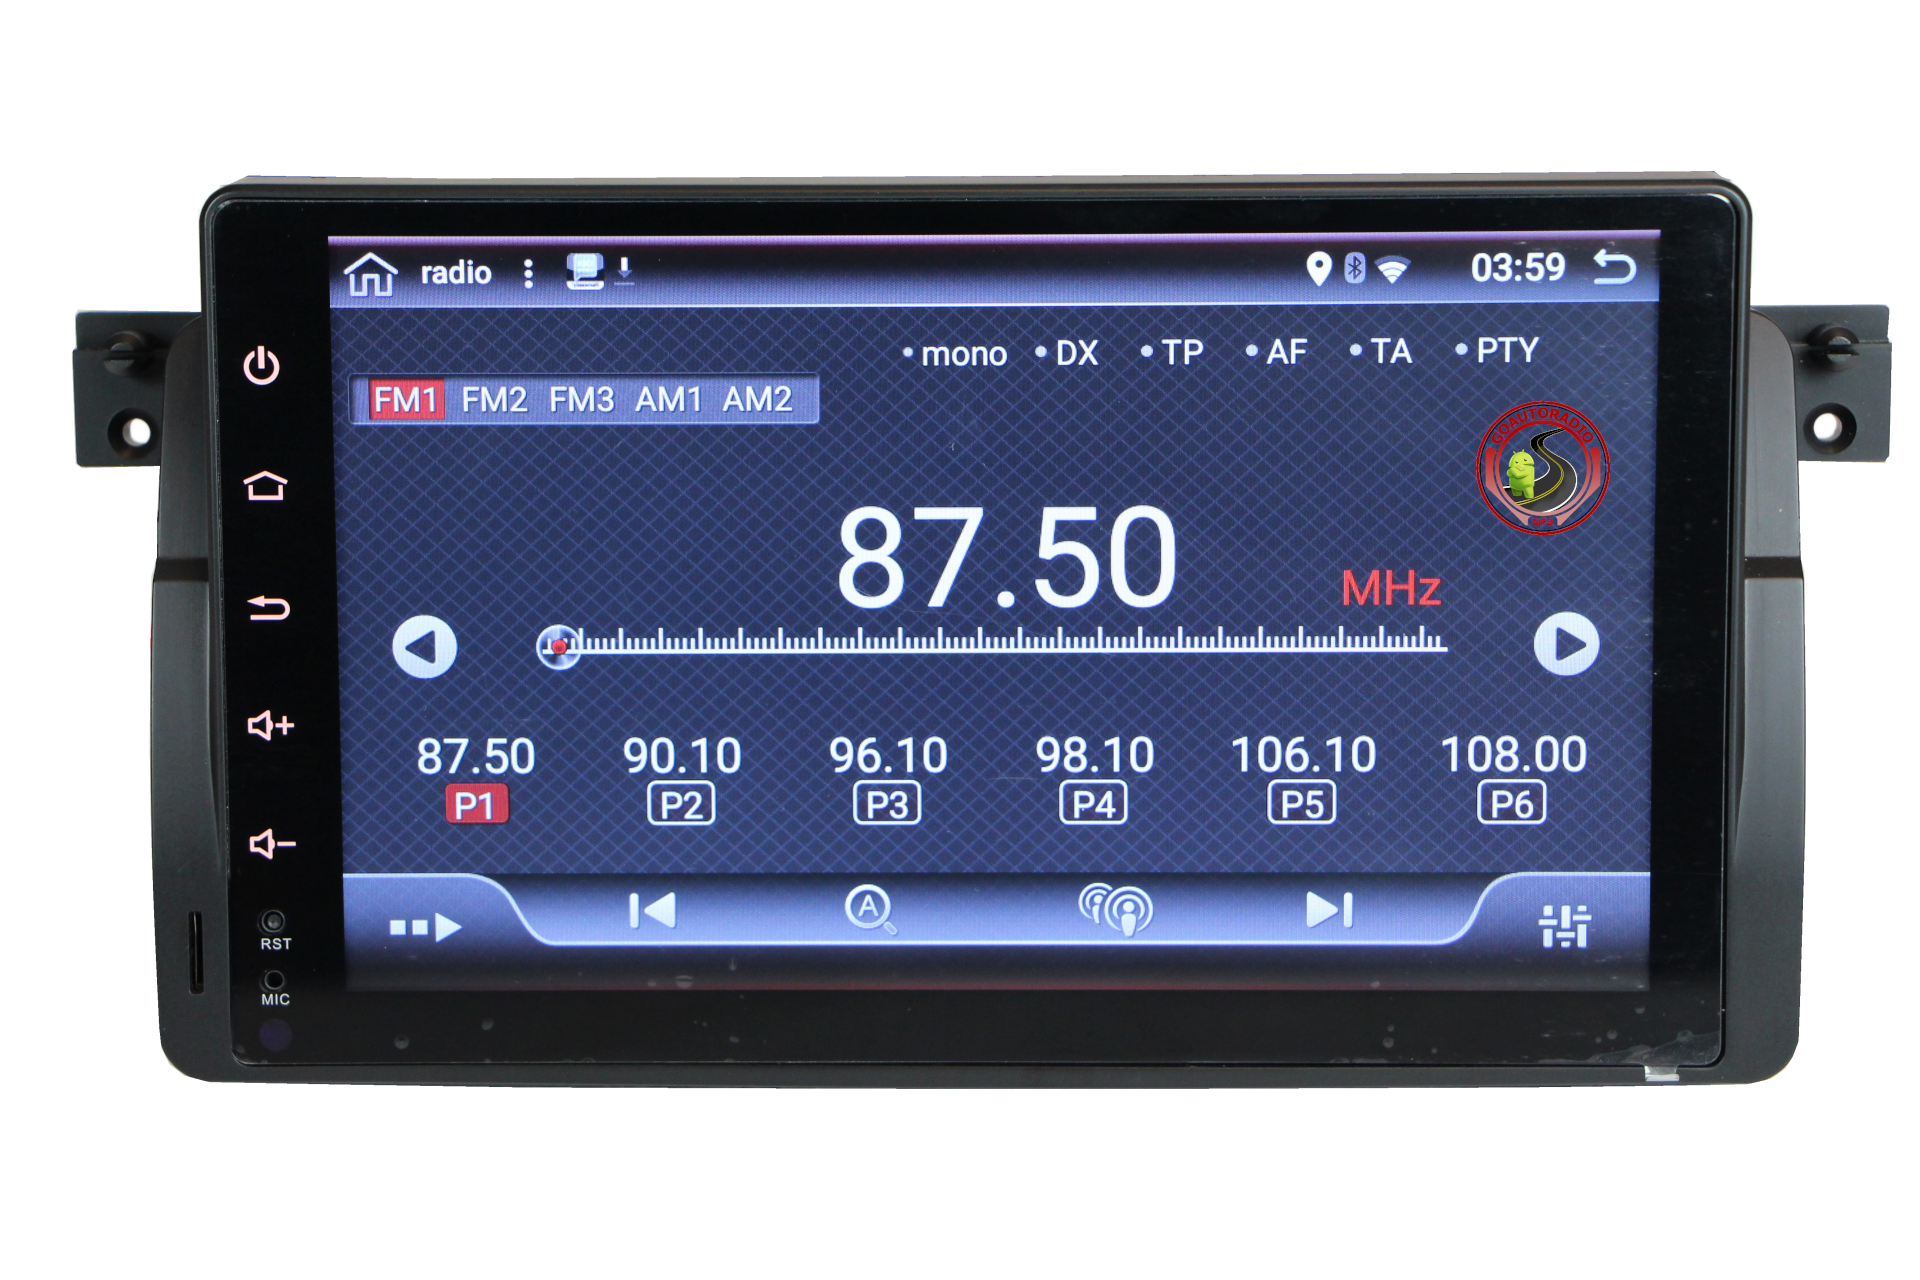 Autoradio GPS Android 12 BMW Serie 3 E46 – GOAUTORADIO